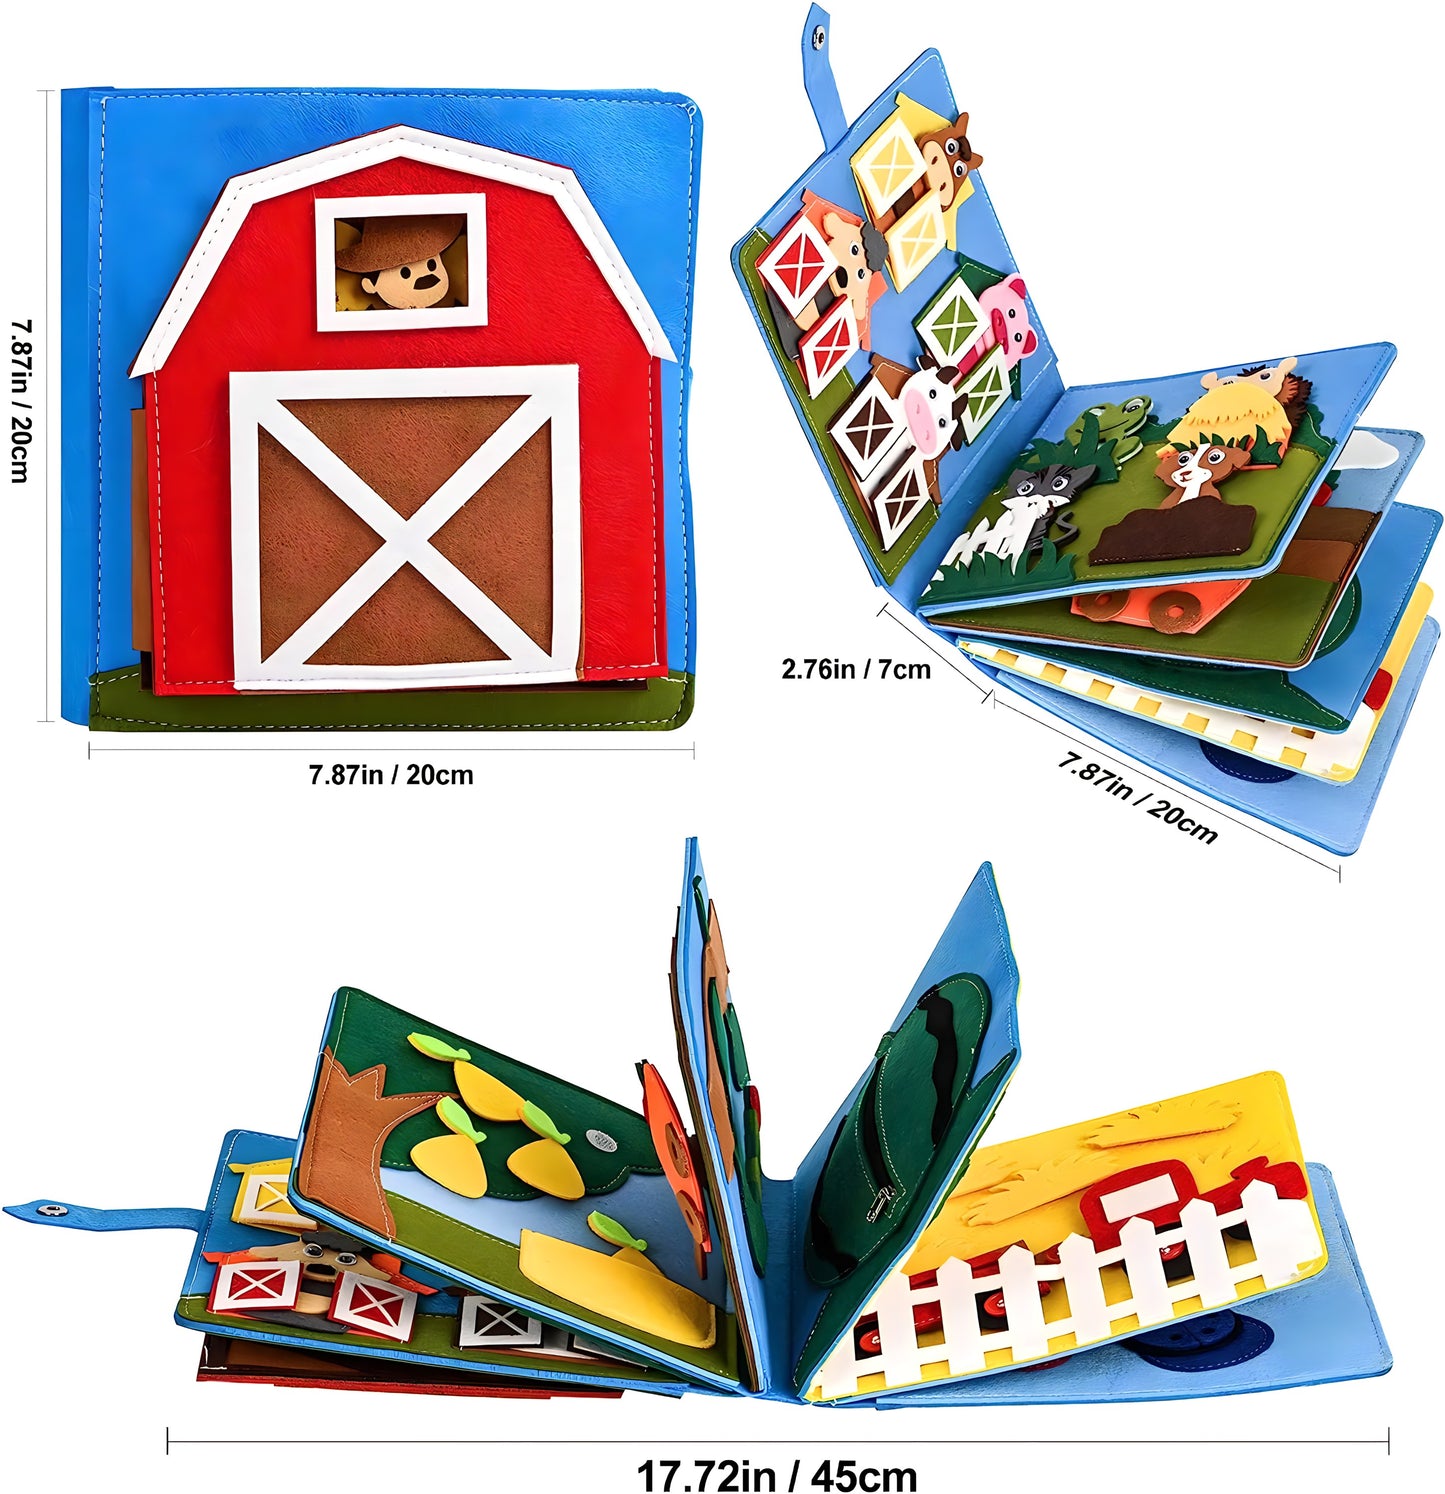 Montessori Farm Book